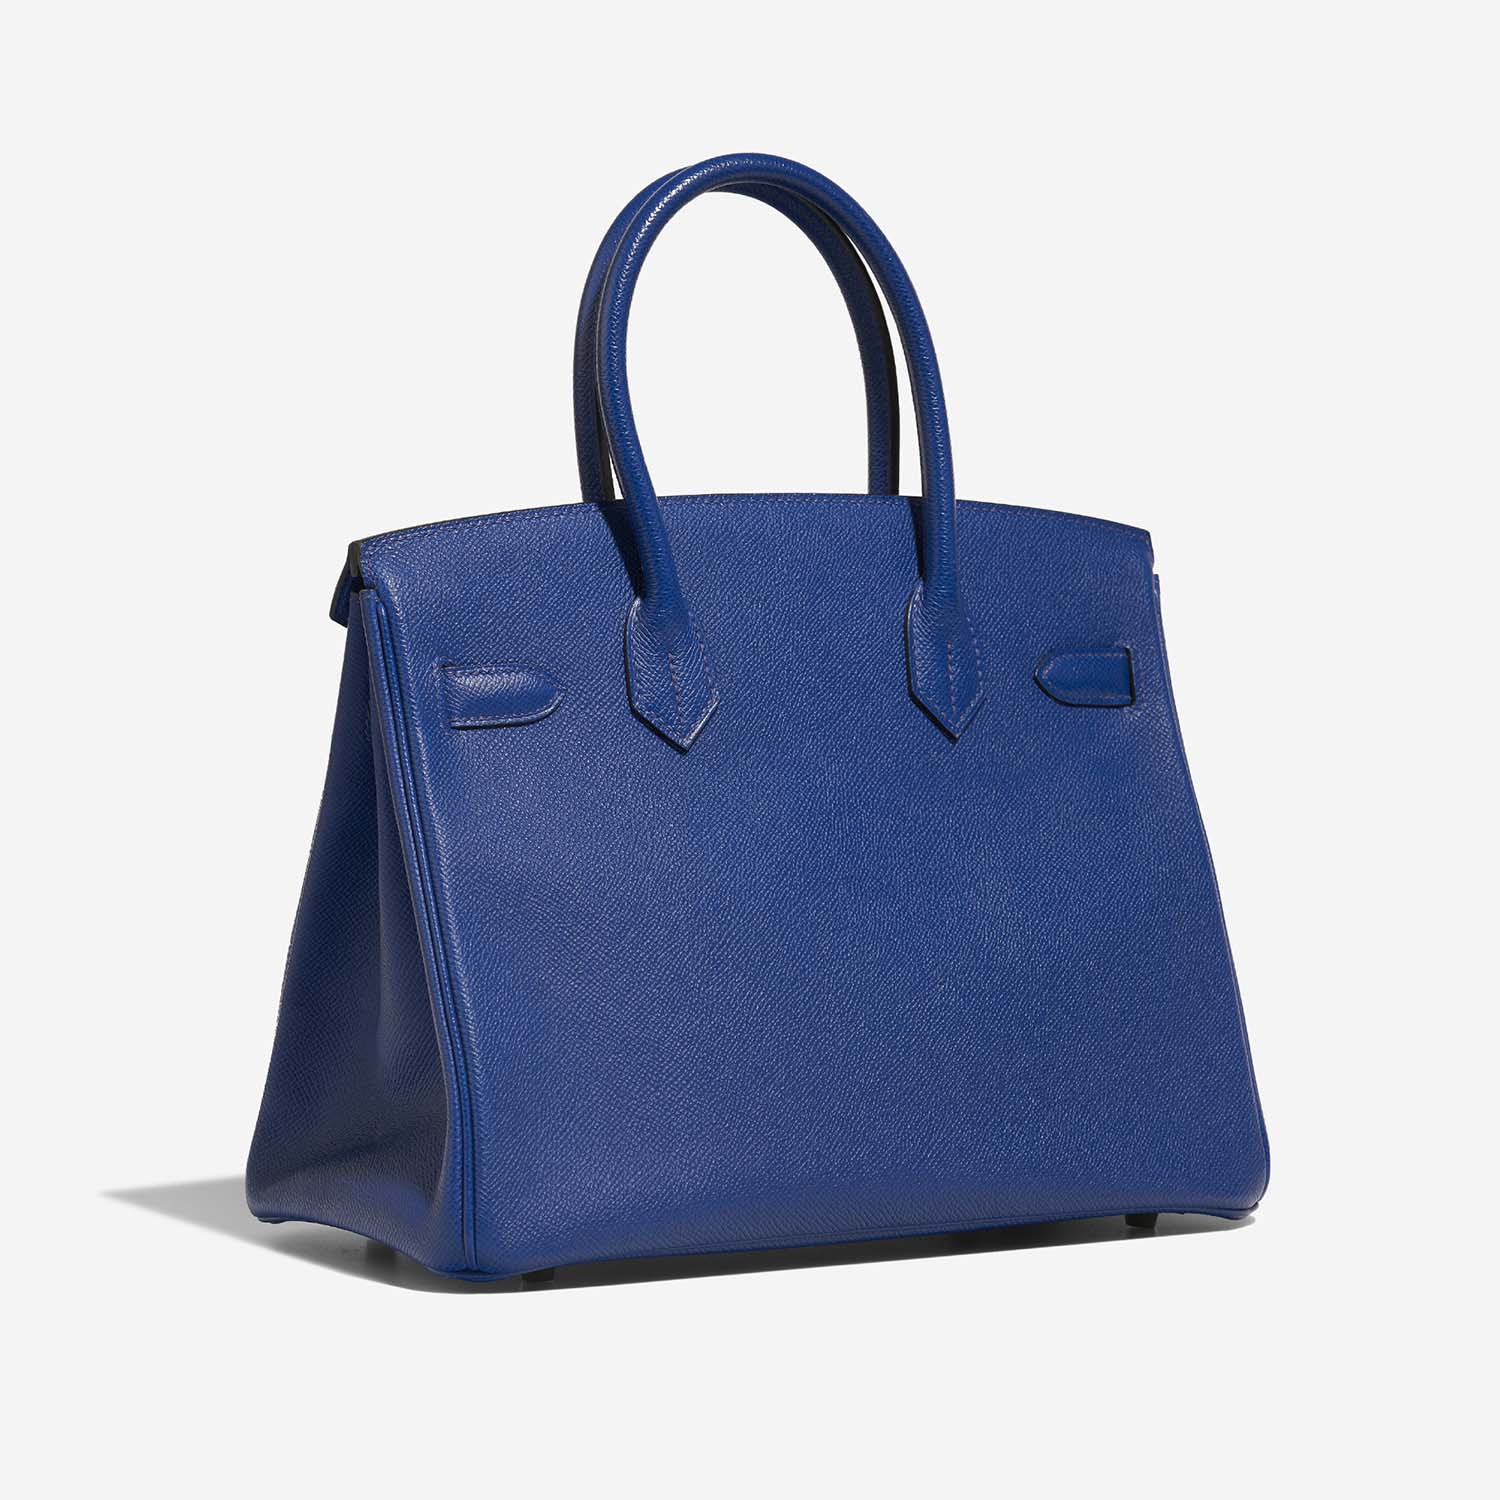 Hermès Birkin 30 BleuElectrique 7BS S | Verkaufen Sie Ihre Designertasche auf Saclab.com